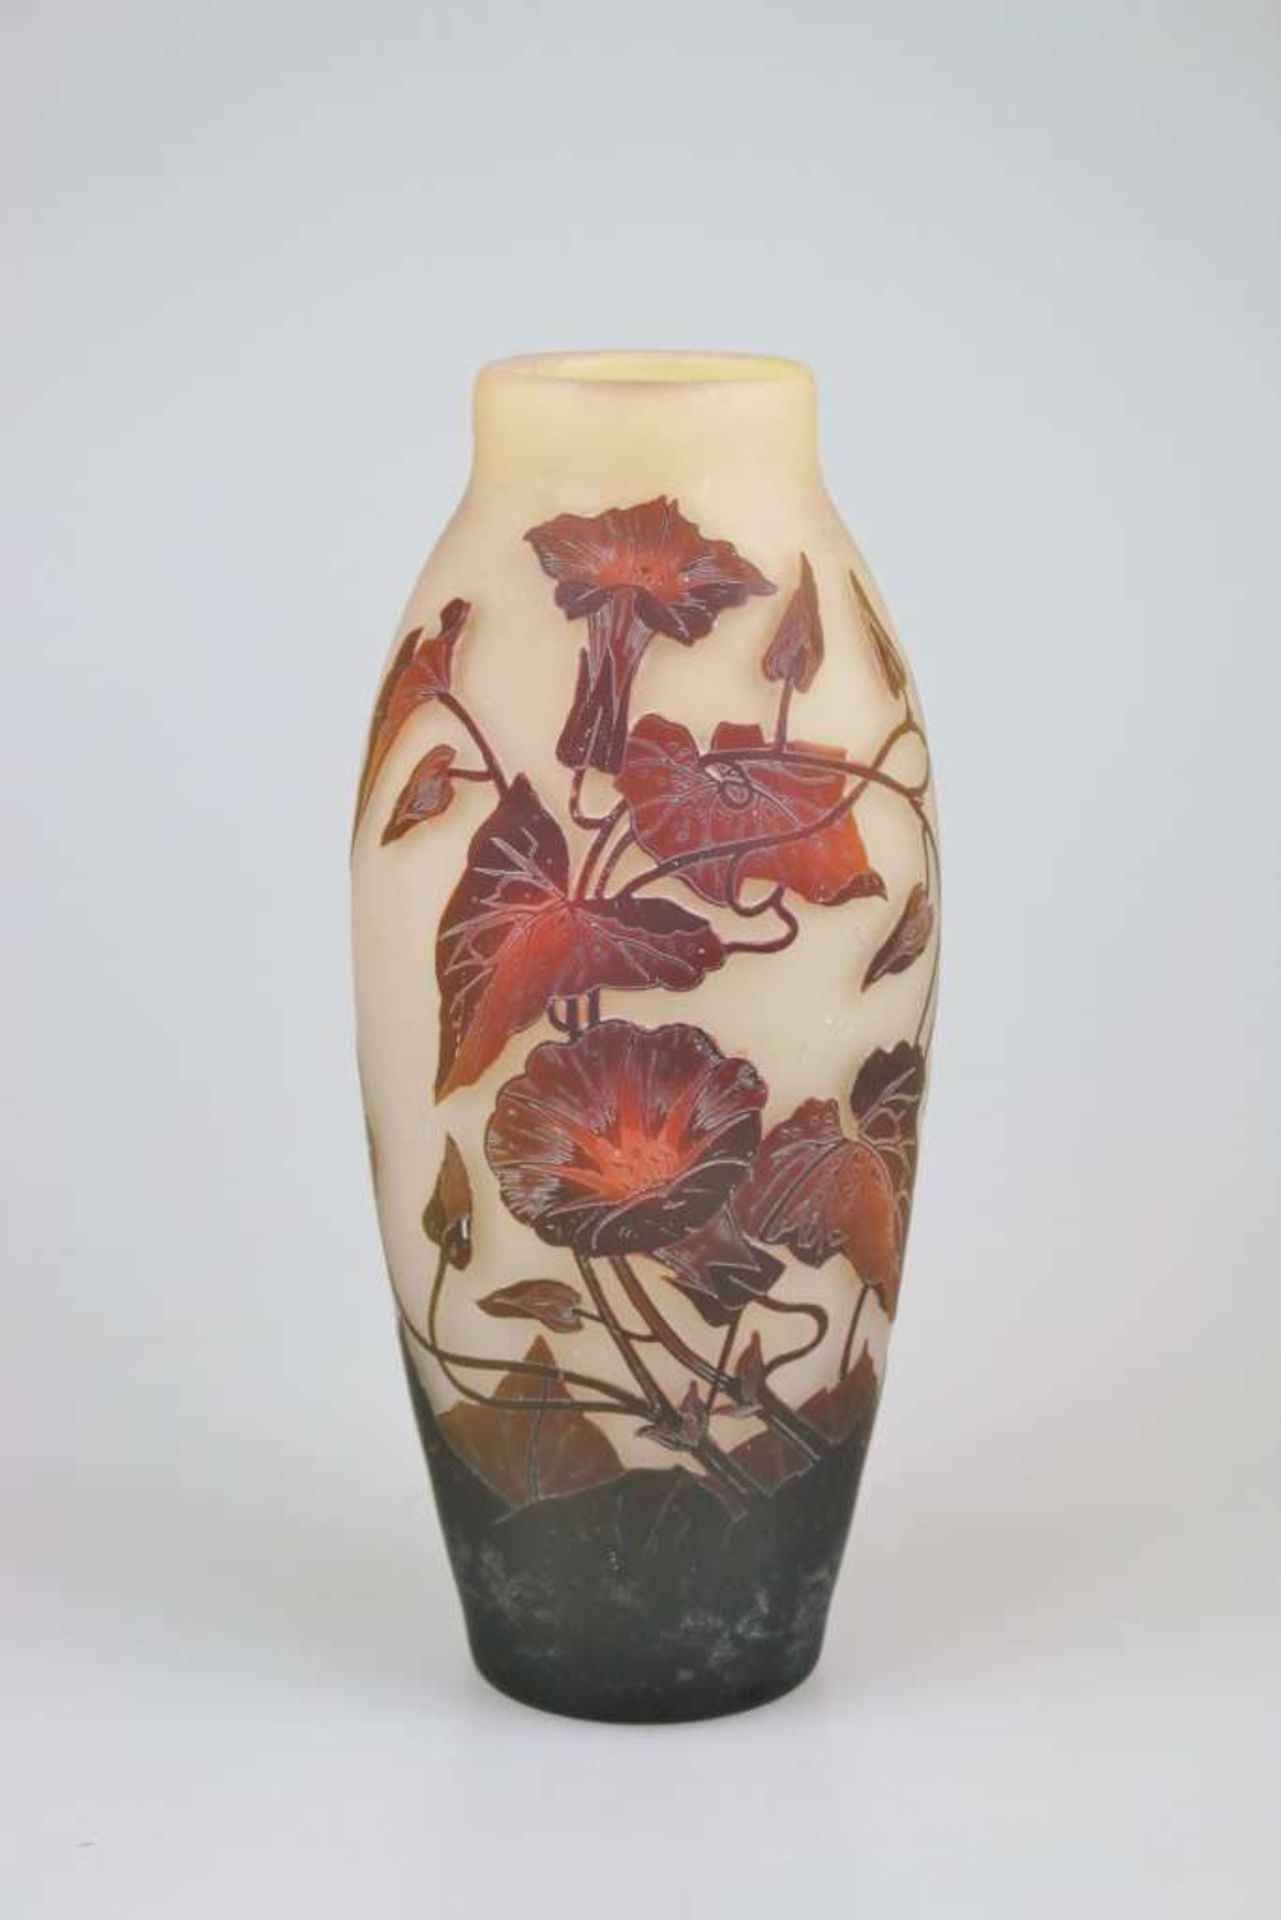 Arsall-Vase mit Trichterwinde, Vereinigte Lausitzer Glaswerke AG, Weisswasser / Oberlausitz, 19